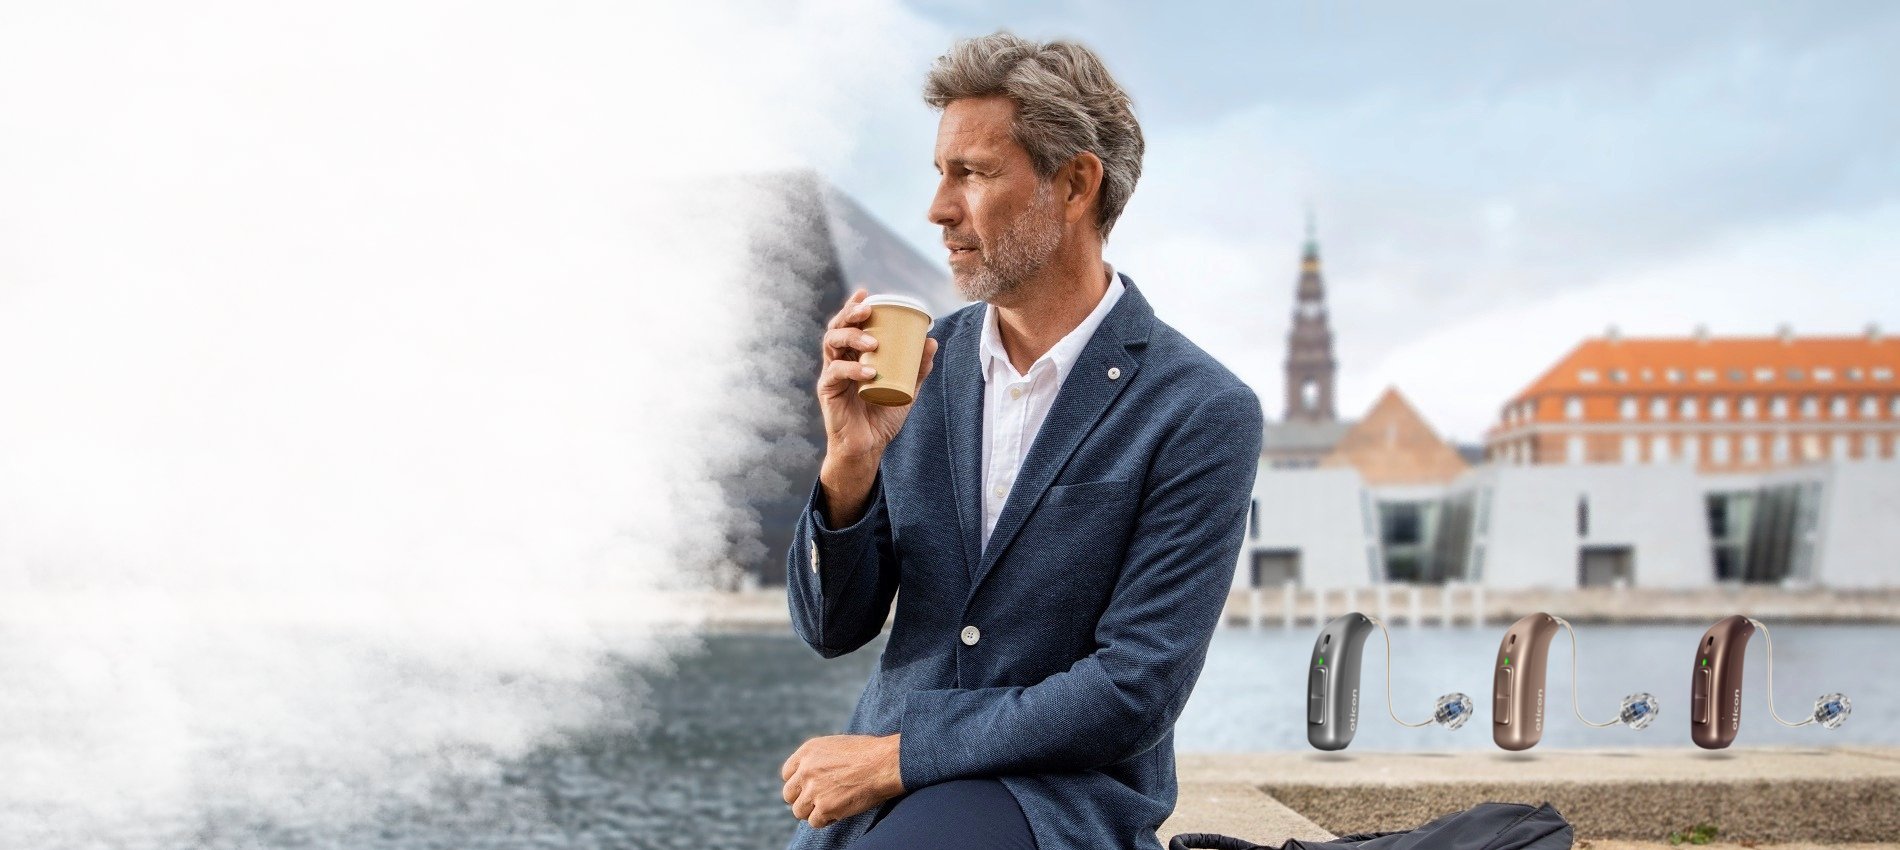 un homme qui porte un appareil auditif qui boit un café au bord d'une rivière